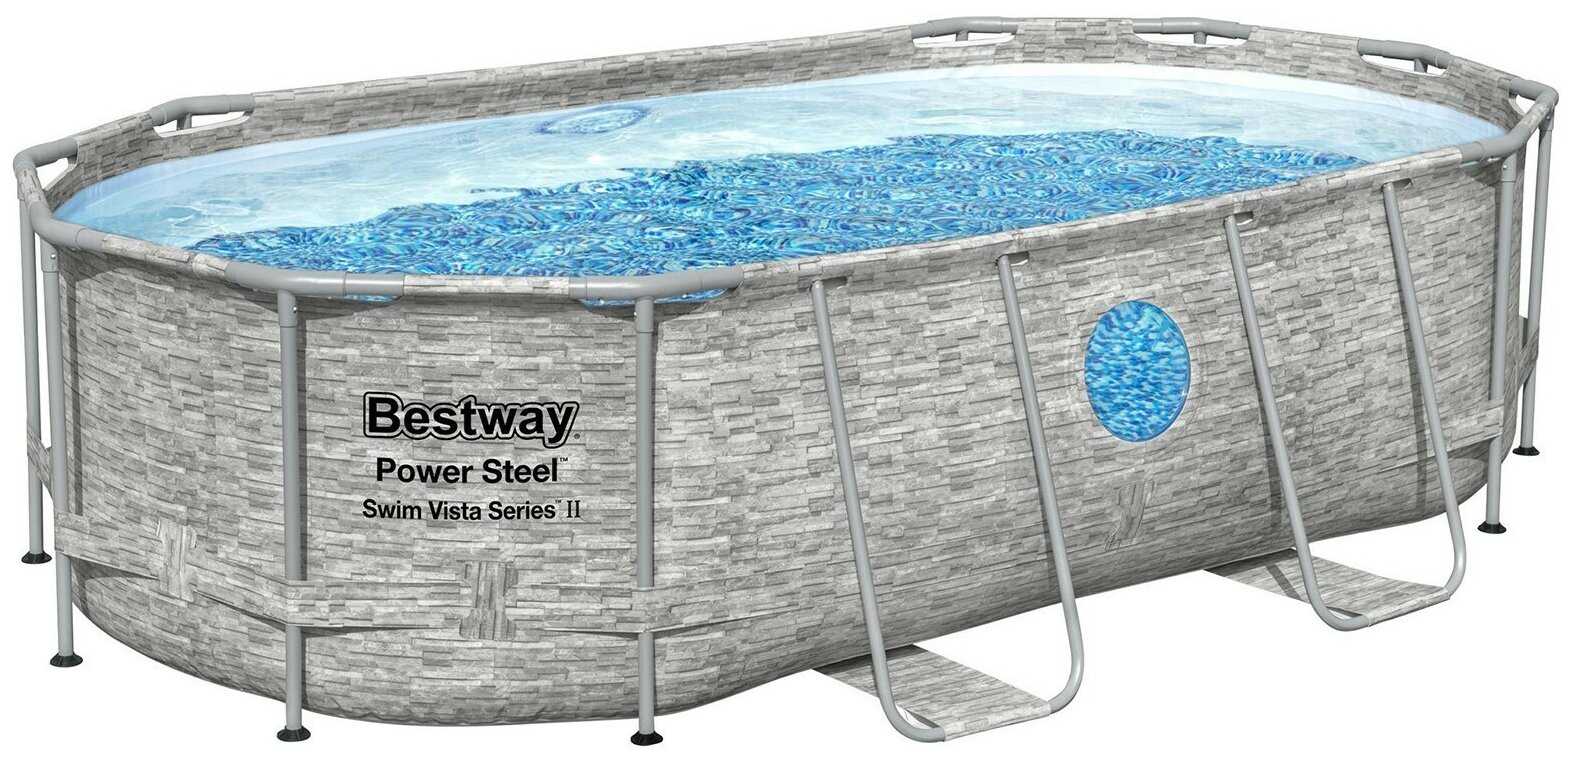 Каркасный овальный бассейн Power Steel 427x250x100 см (+ 3 аксессуара, ротанг, окошко!), Bestway